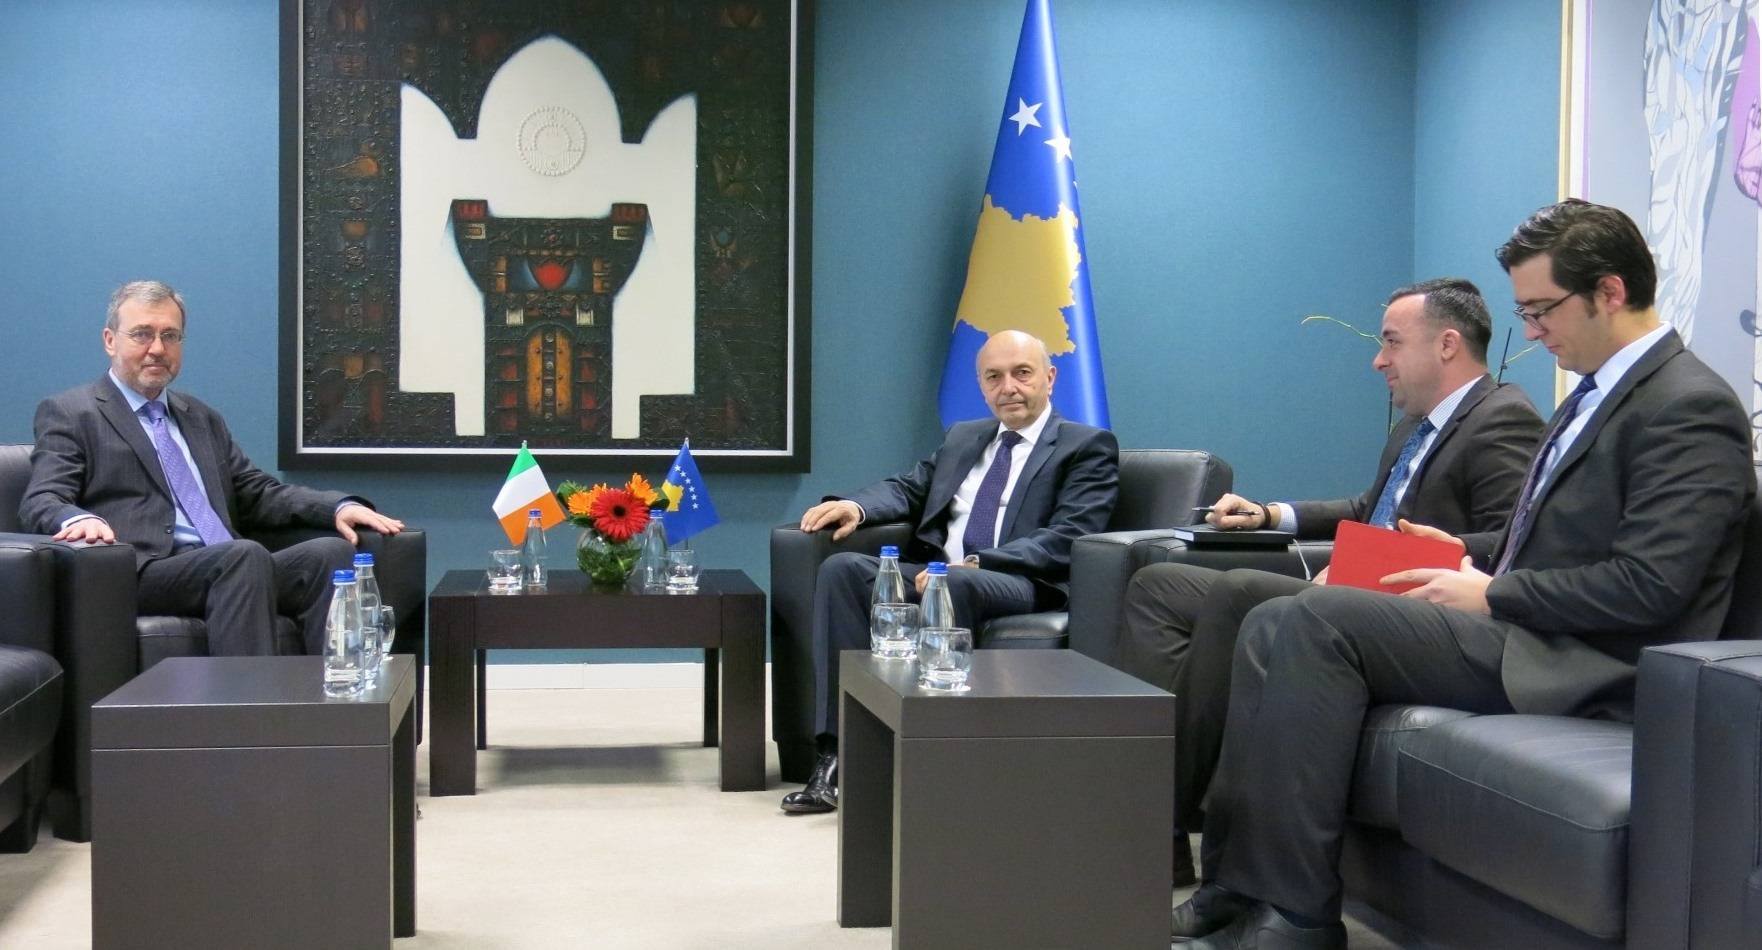 Irlanda vazhdon përkrahjen për Kosovën